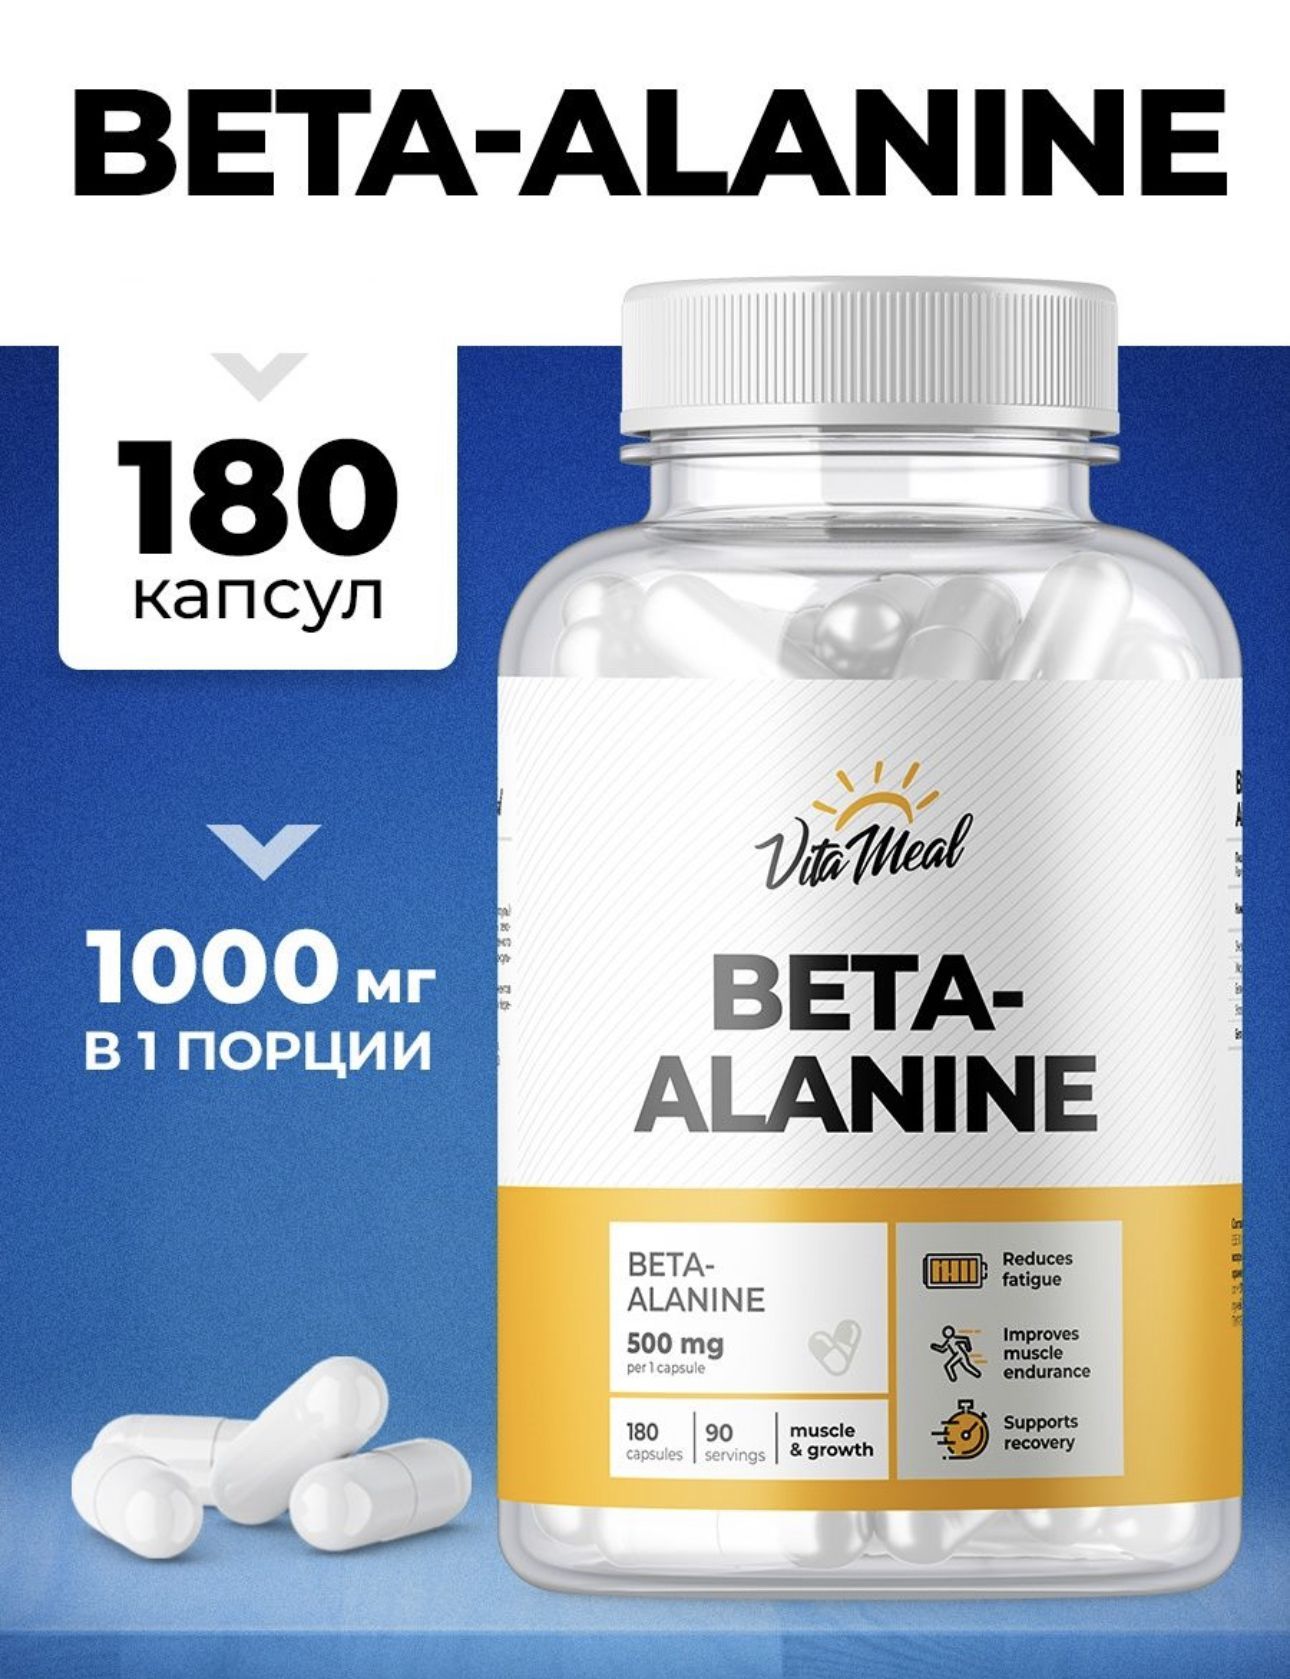 Бета-аланин,АминокислотаBeta-alanine500мгвкапсуле,Силаивыносливость,Восстановлениепослетренировокифизическихнагрузок,VitaMeal,180капсул